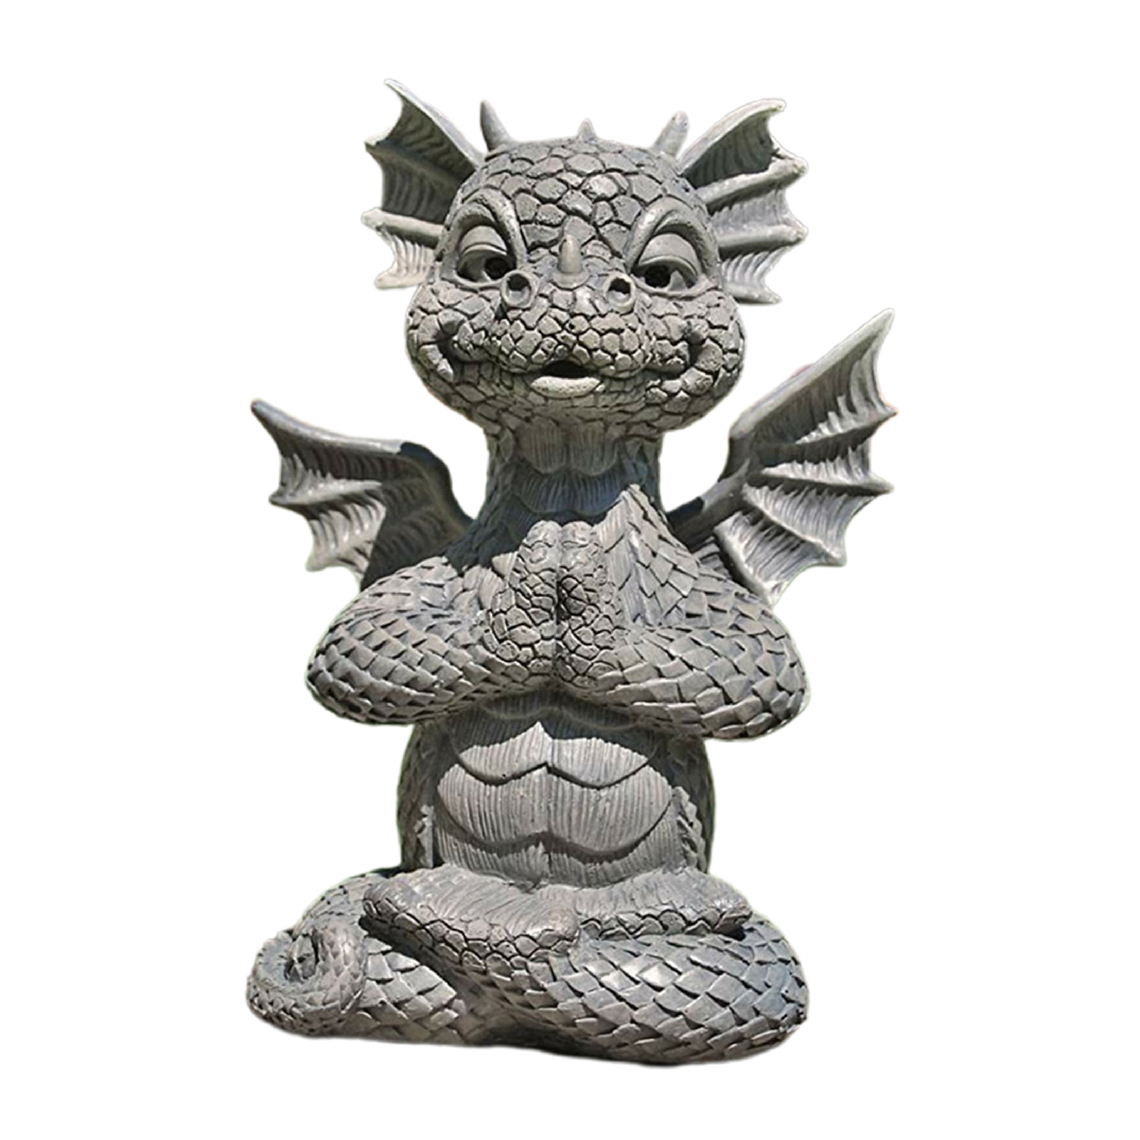 marque generique - Sculpture Créative D'ornement De Figurine De Statue De Dragon Animal Pour La Décoration A02 - Petite déco d'exterieur